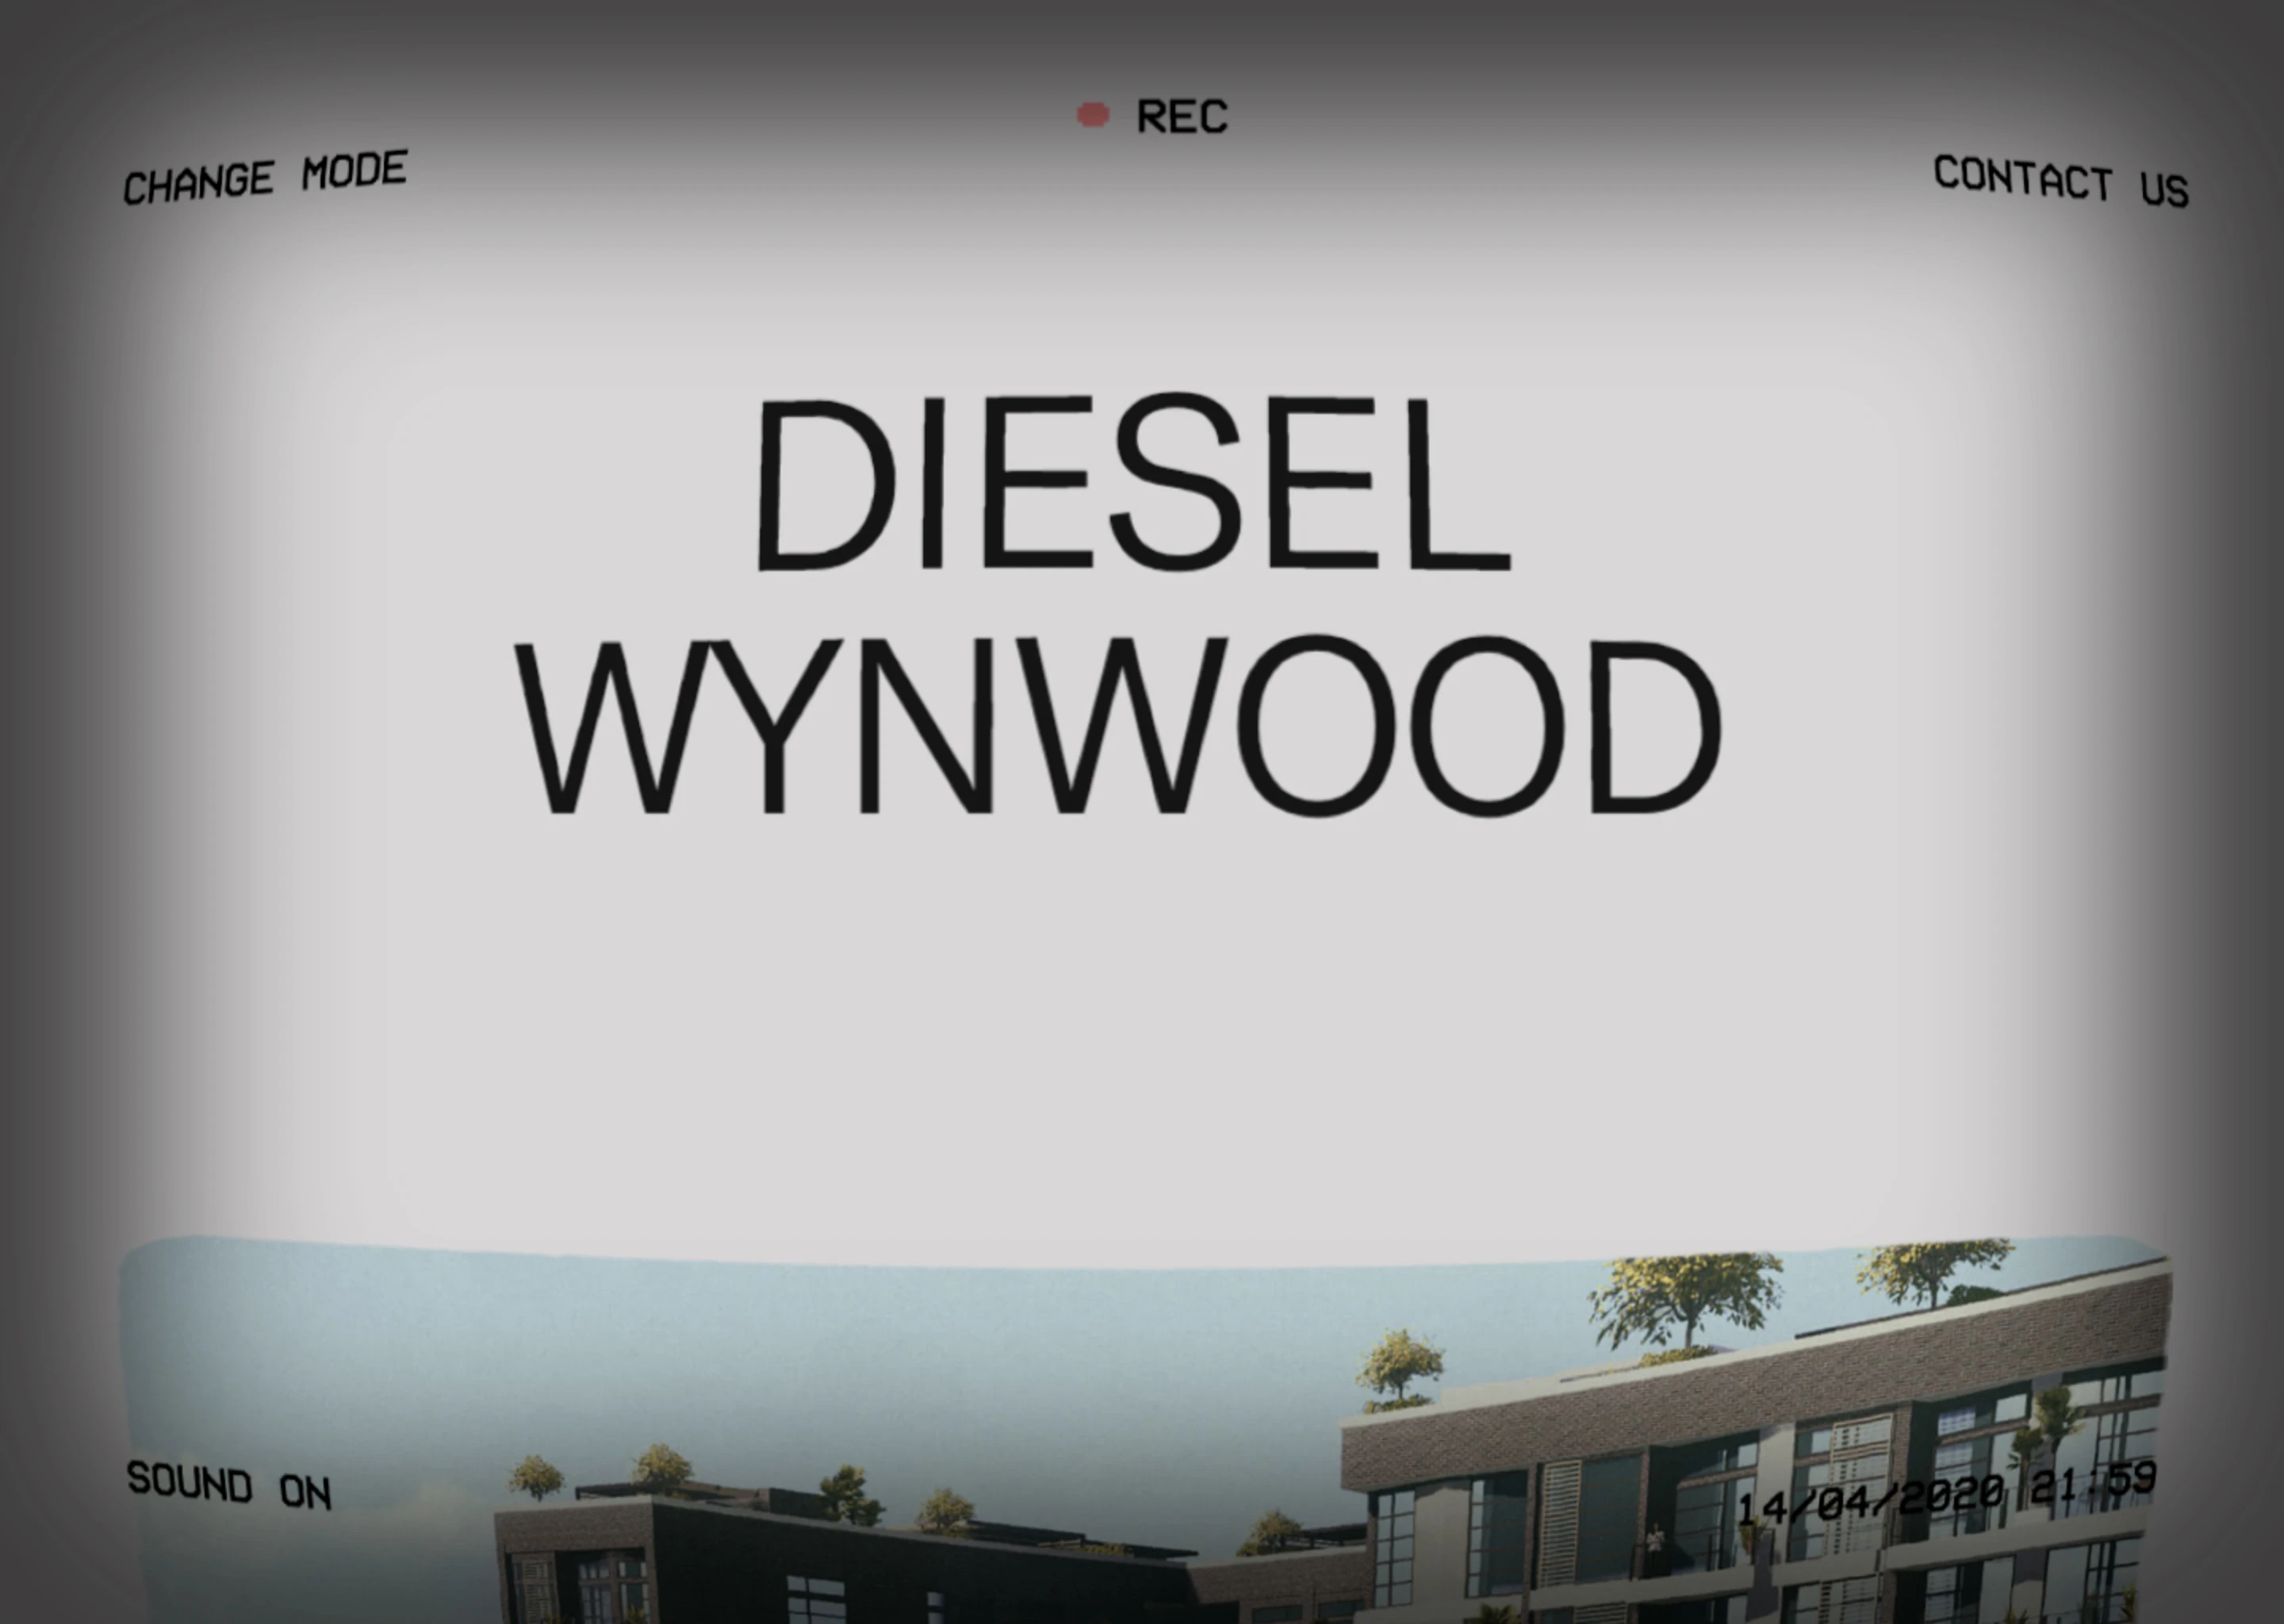 Diesel Wynwood